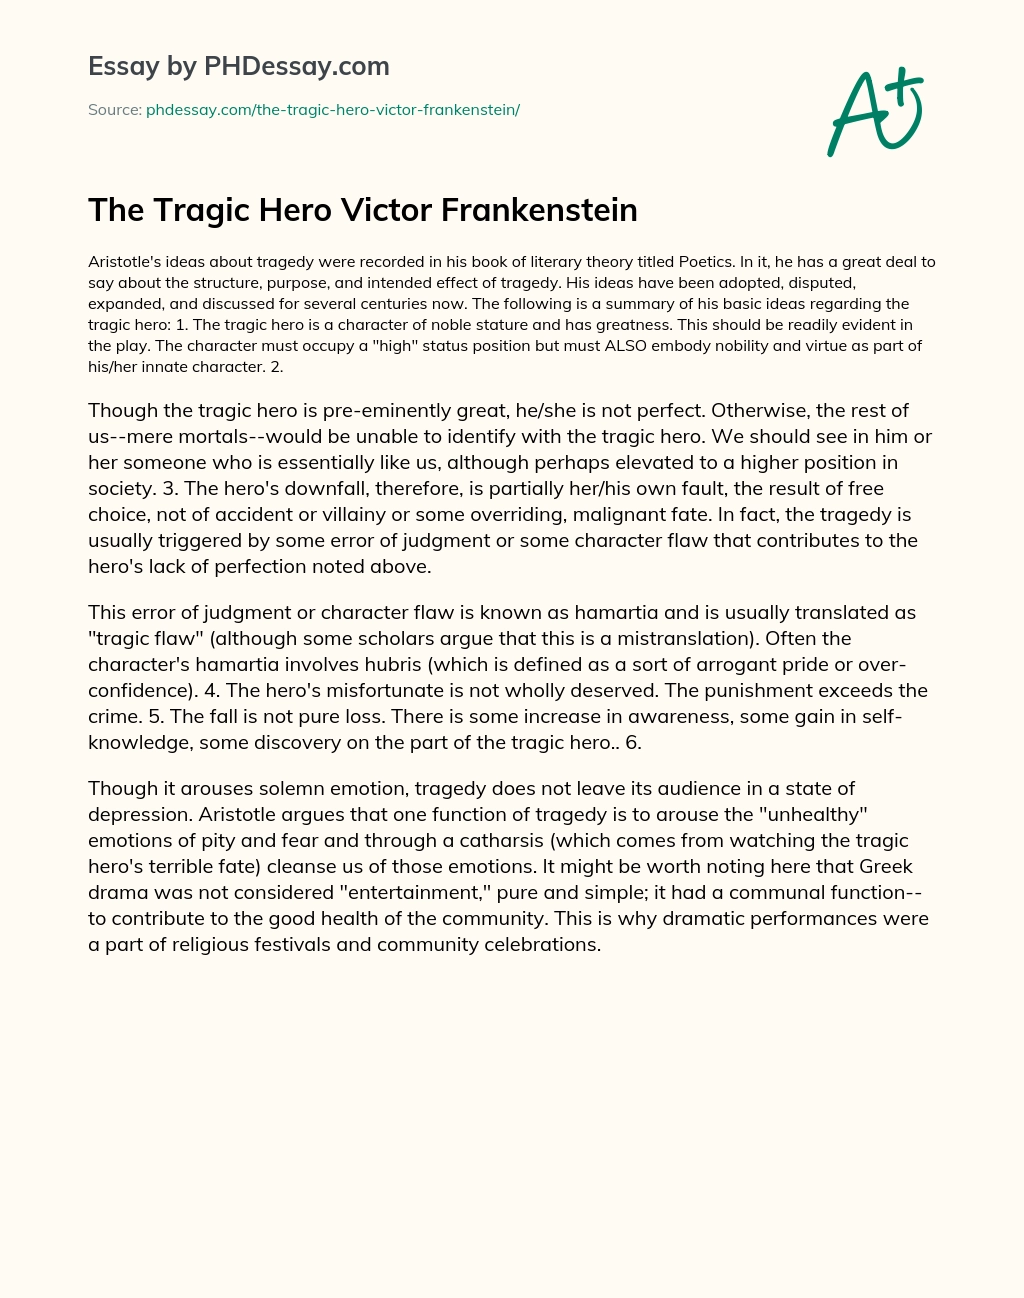 The Tragic Hero Victor Frankenstein essay